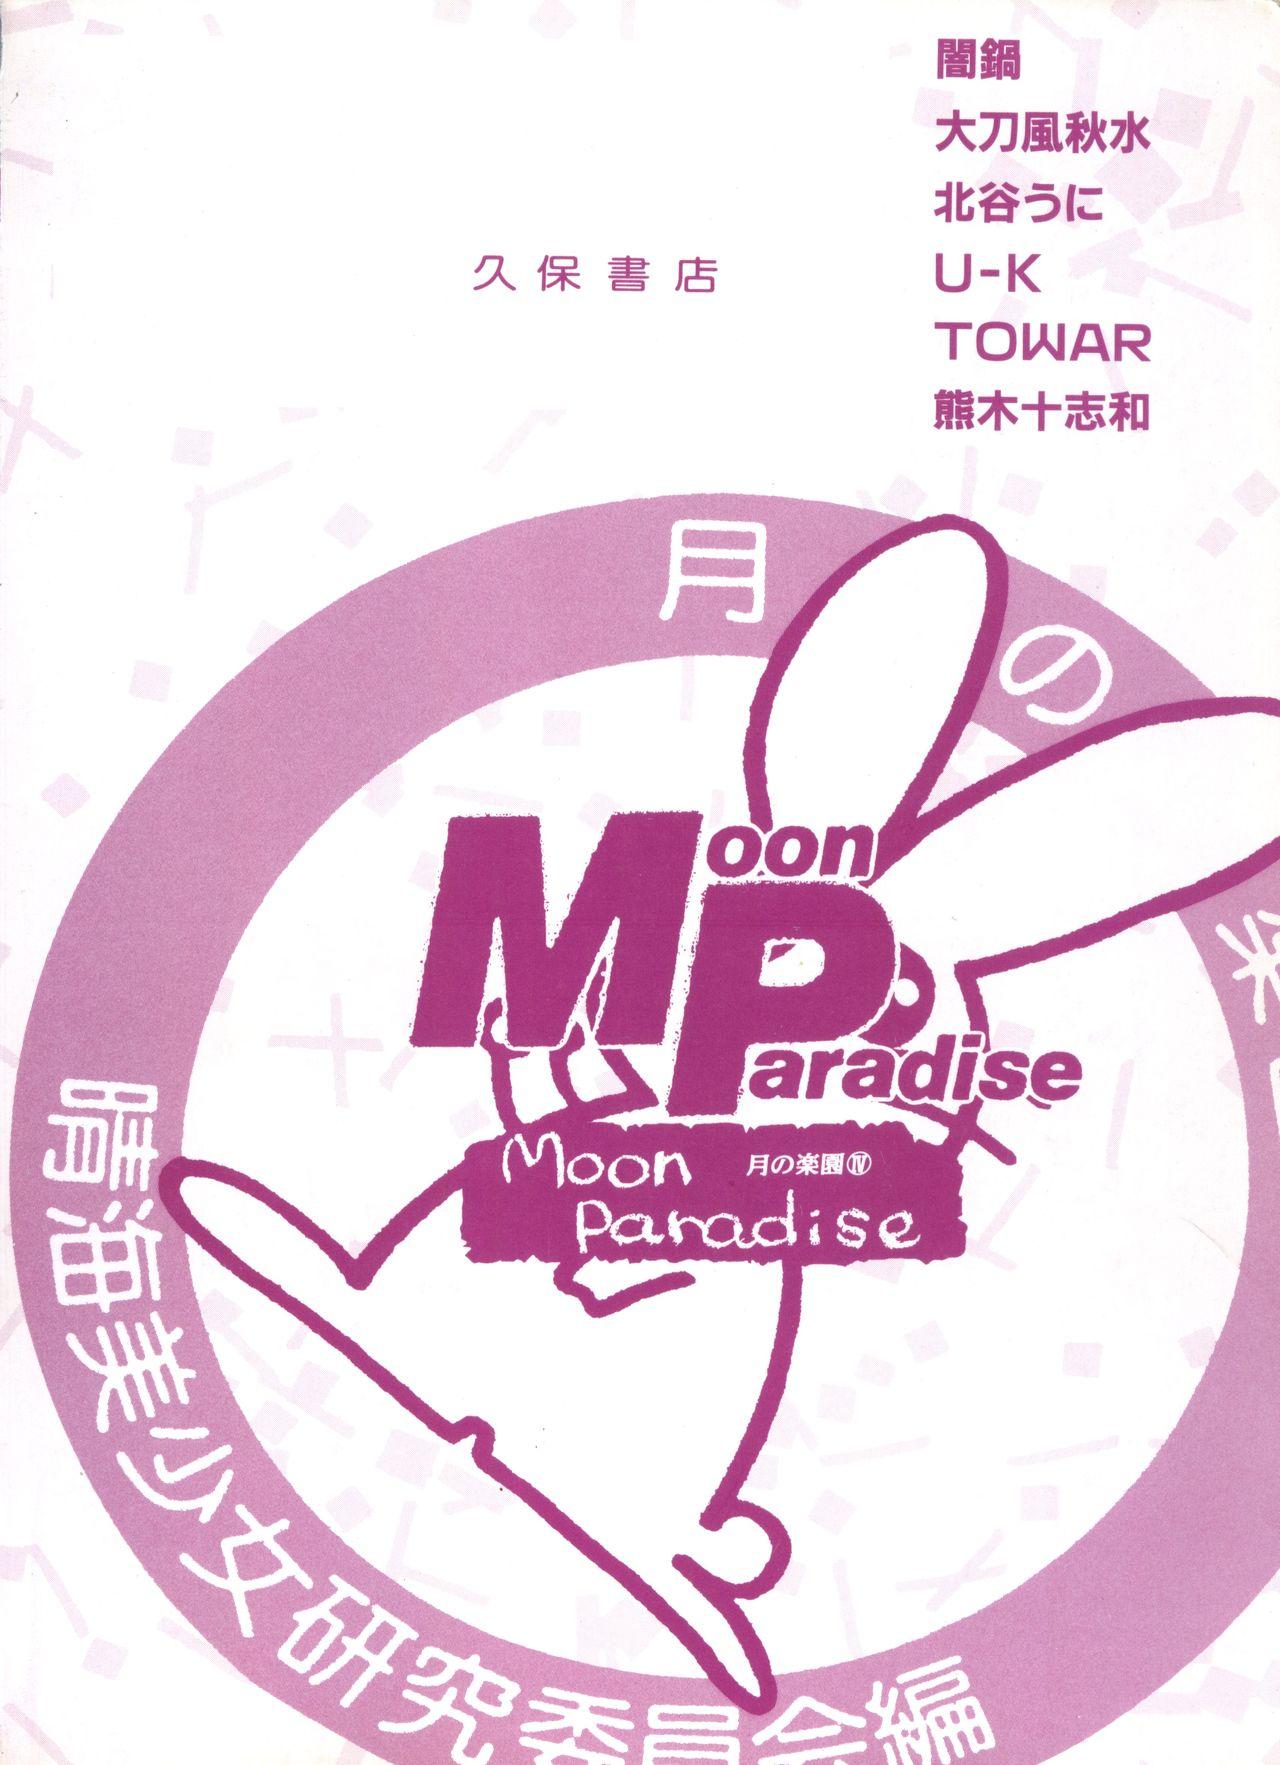 Bishoujo Doujinshi Anthology 7 - Moon Paradise 4 Tsuki no Rakuen 150